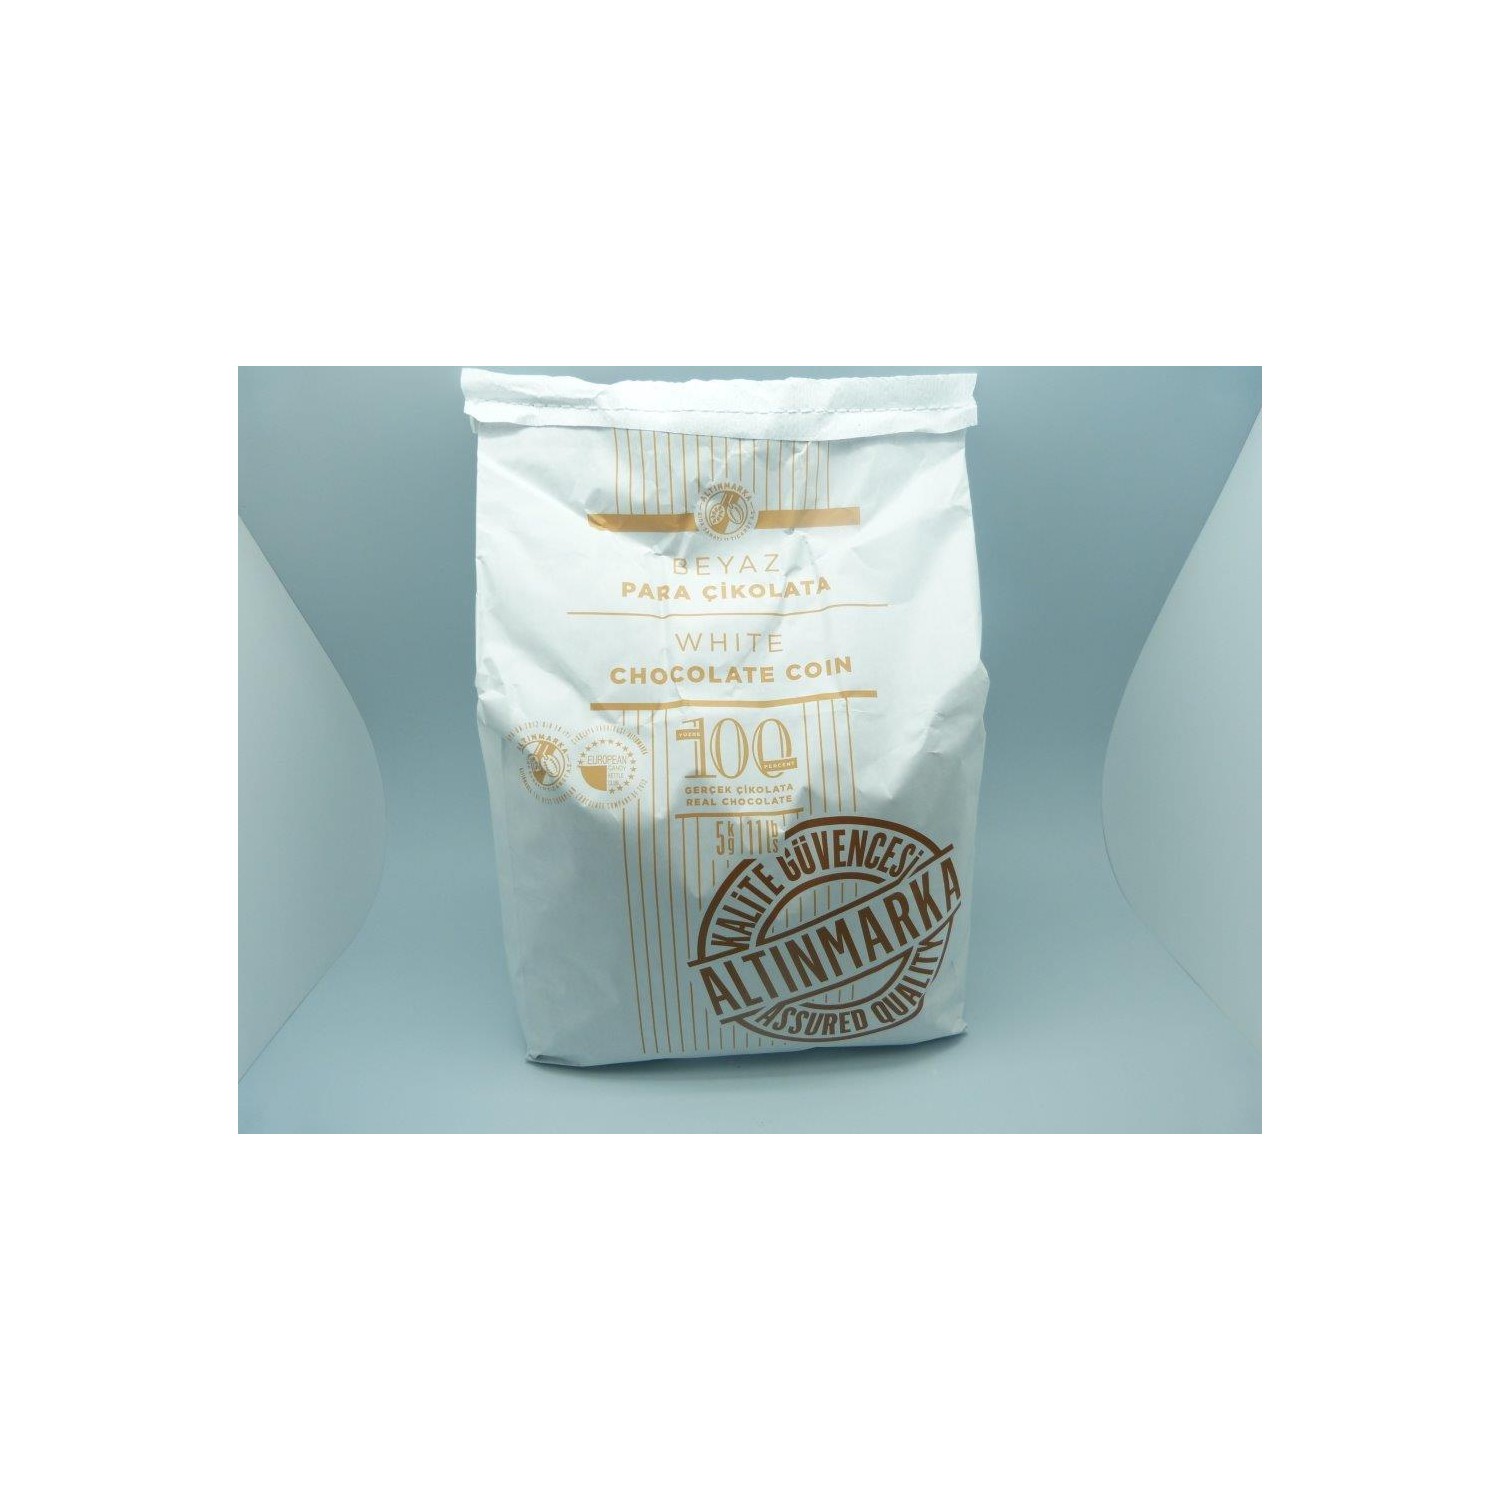 Altınmarkaaltınmarka Beyaz Pul / Para Çikolata 5Kg Fiyatı